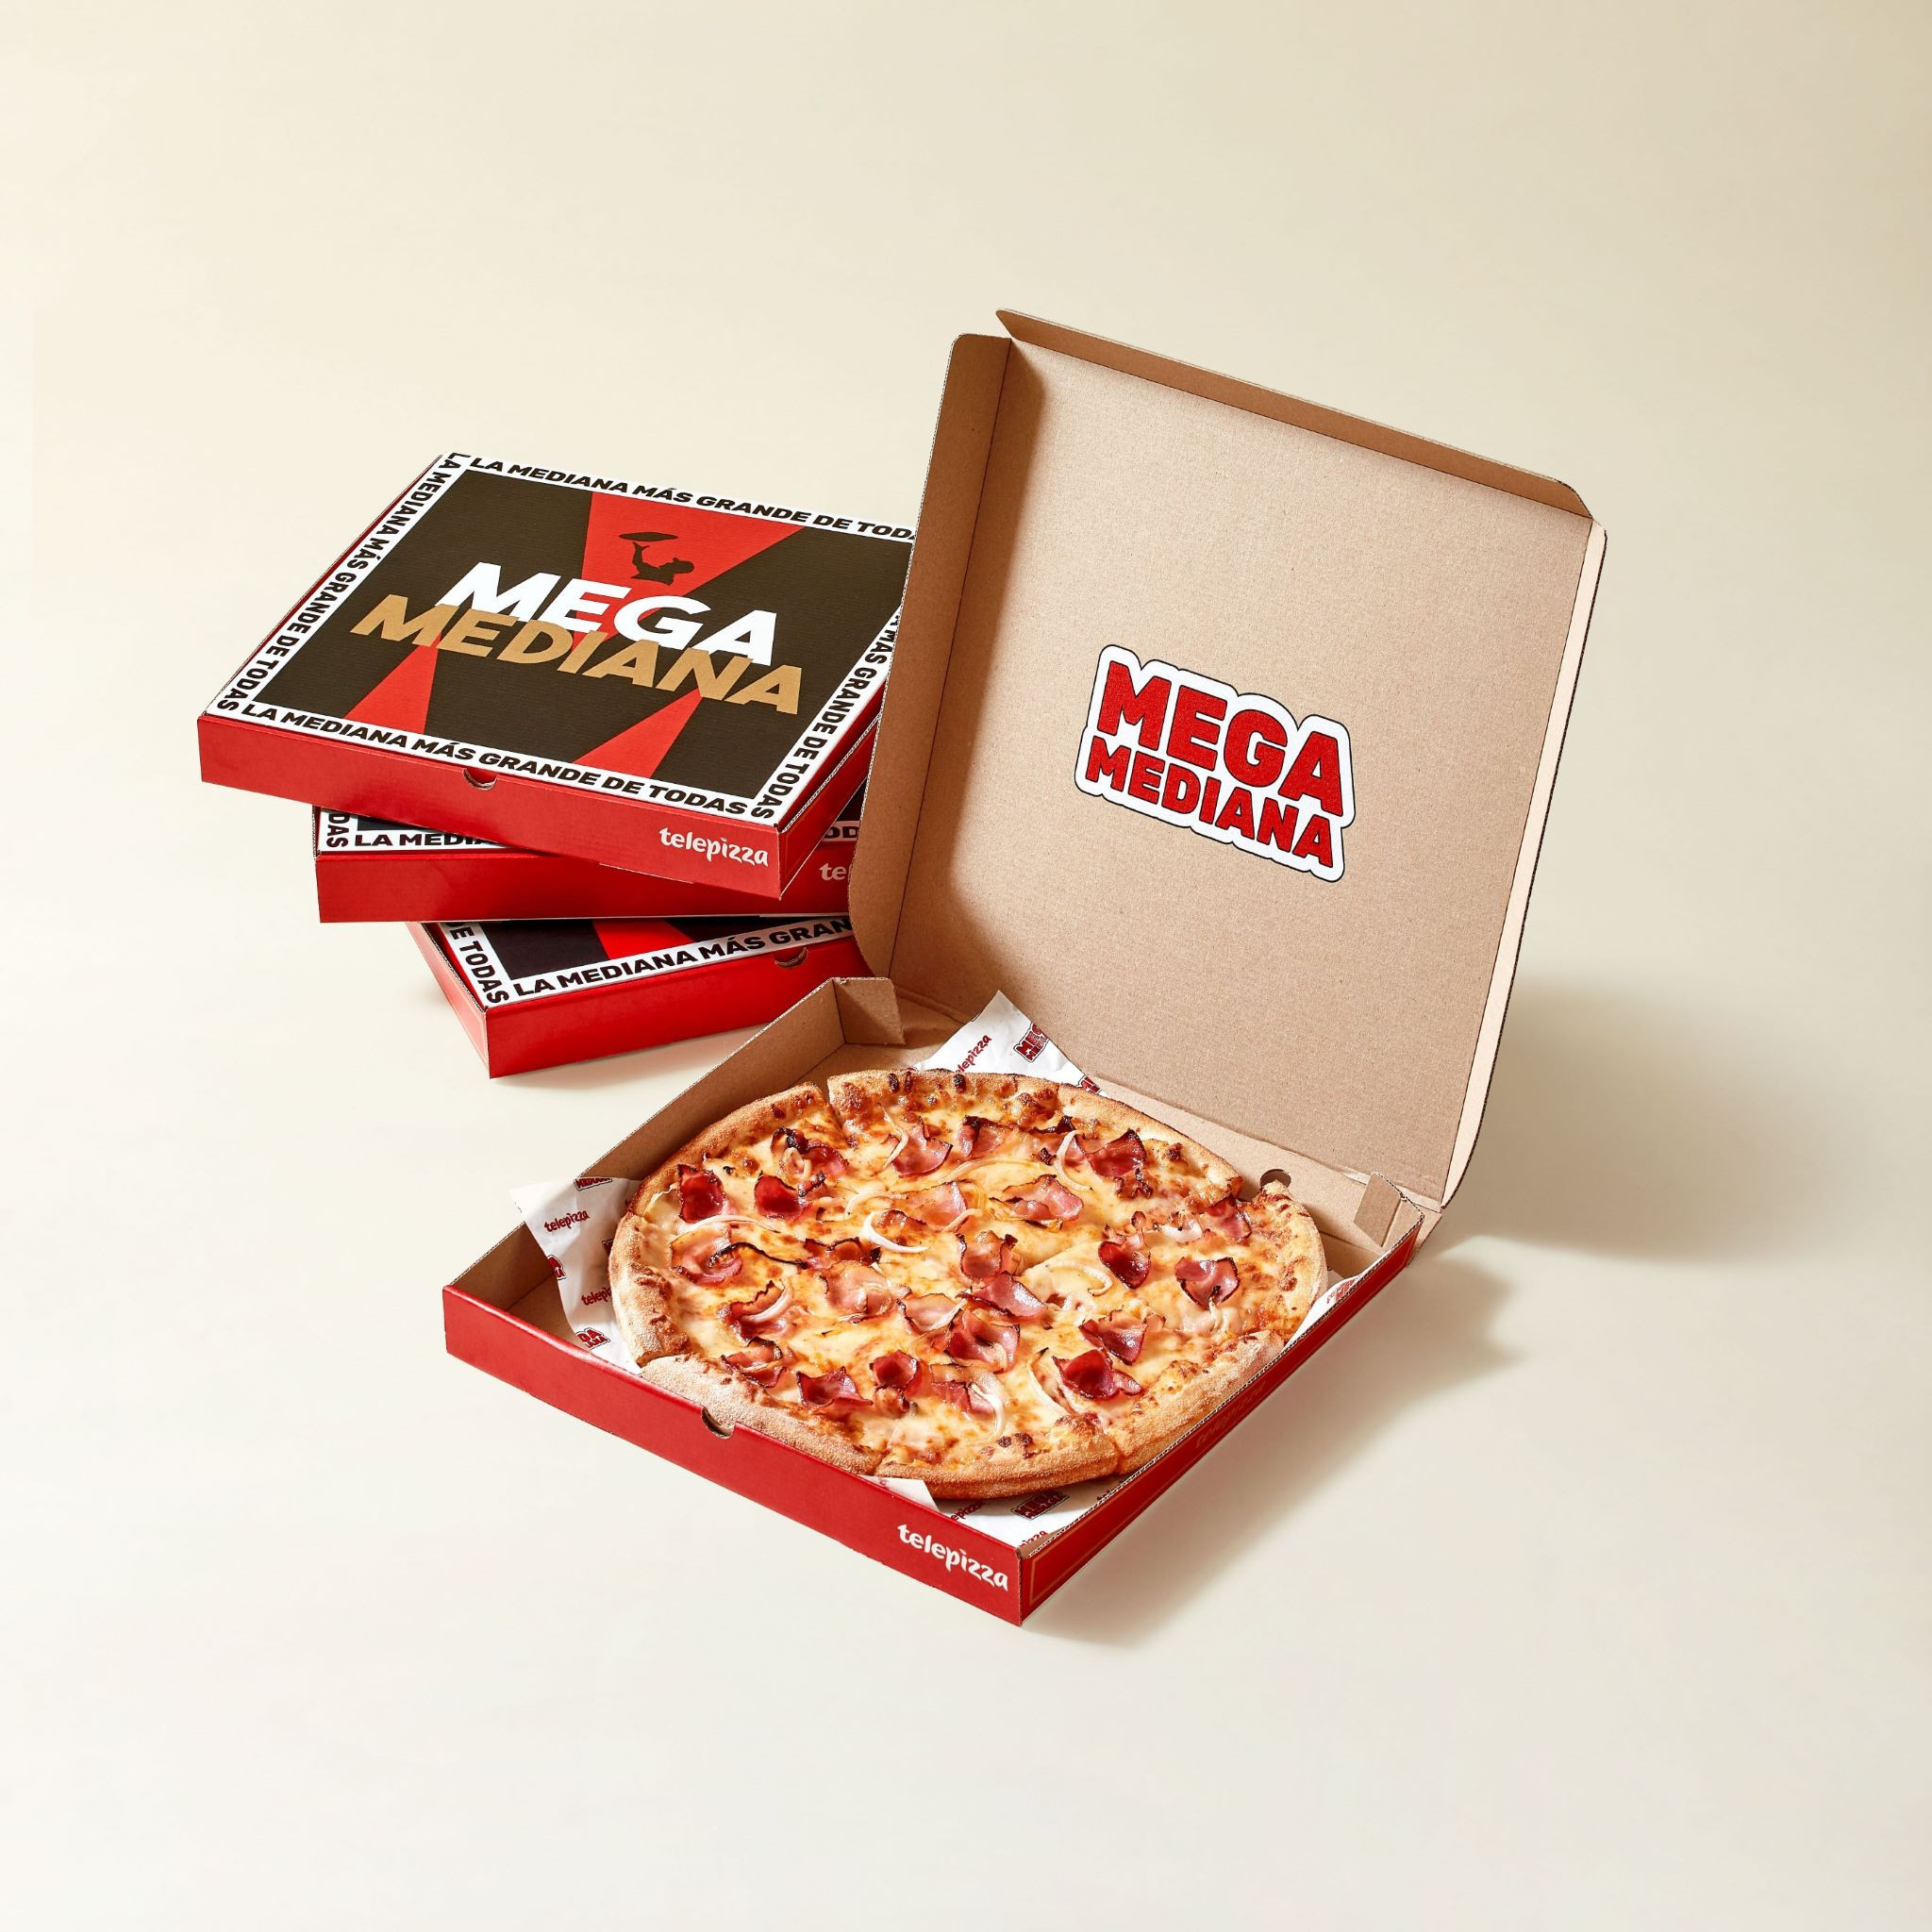 ​Telepizza lanza la Megamediana, la pizza mediana más grande del mercado